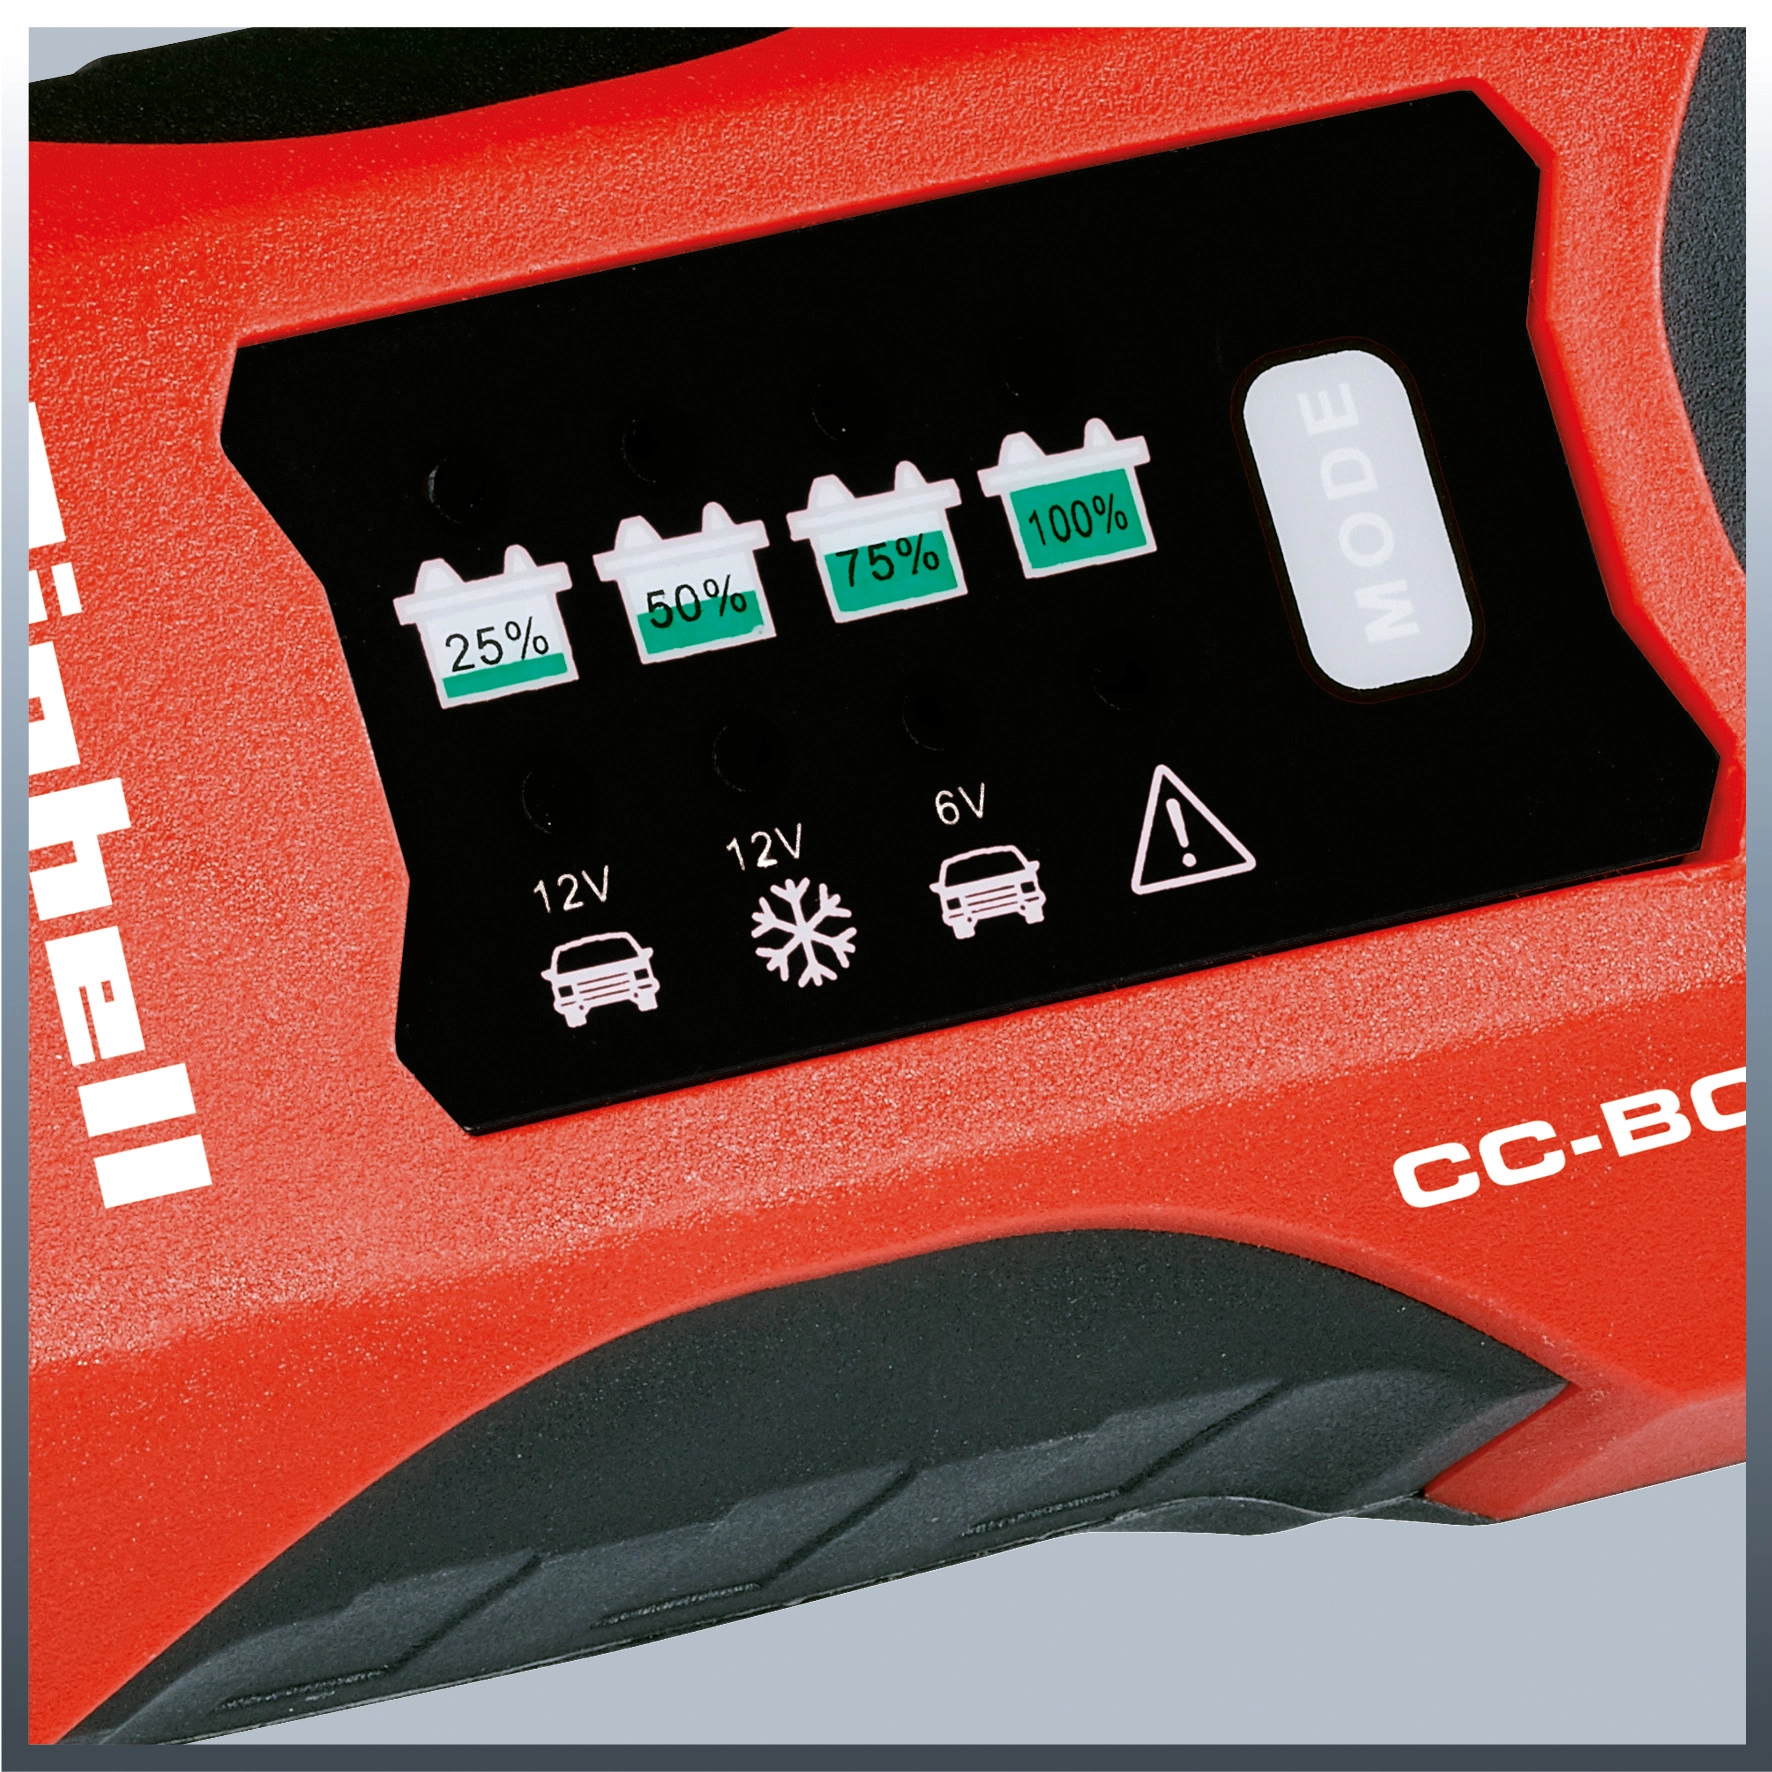 EINHELL Batterie-Ladegerät CE-BC 2 M online kaufen